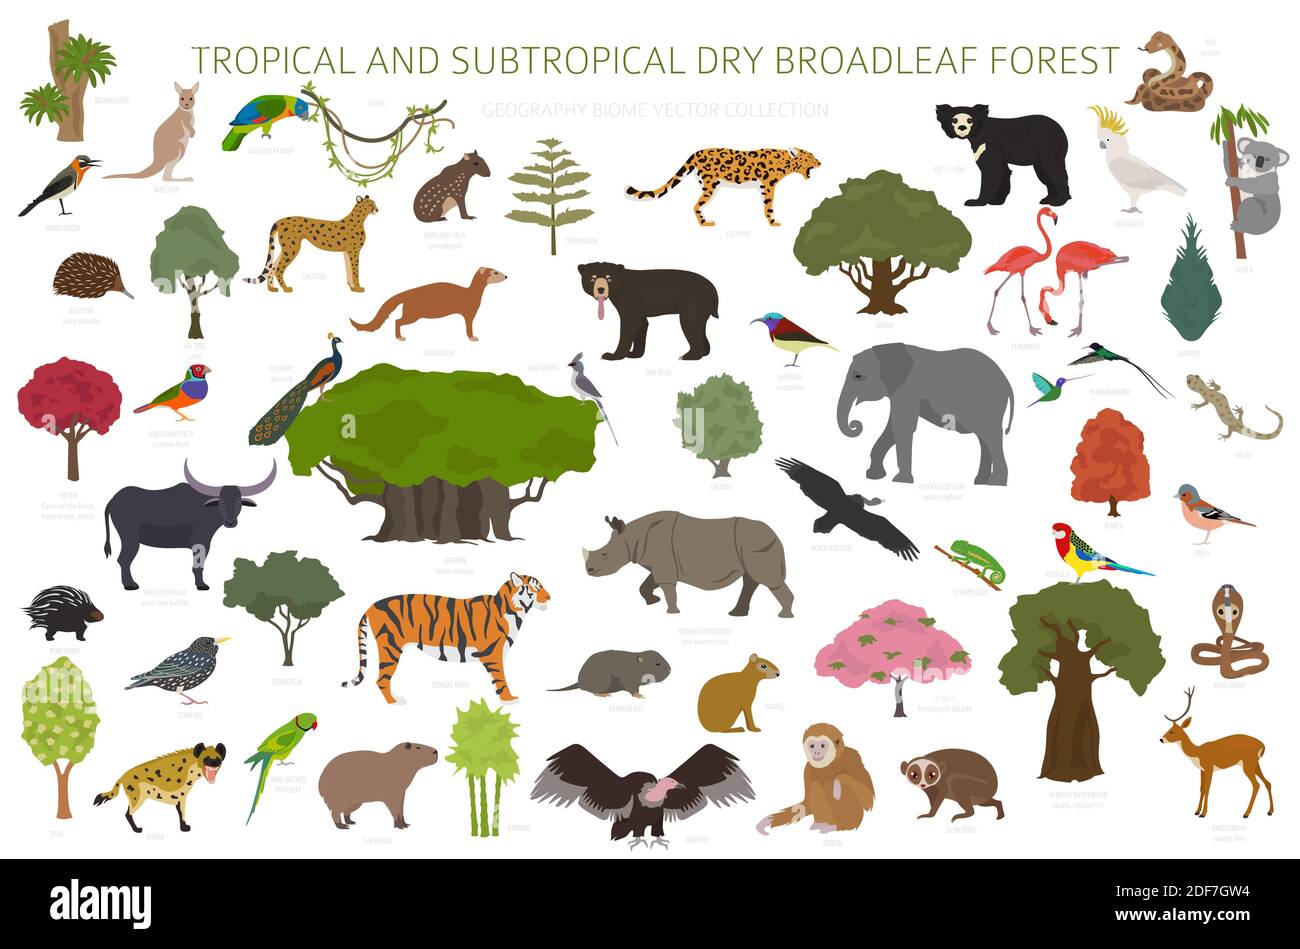 Biome forestier tropical et subtropical à feuilles larges, infographie sur la région naturelle. Forêts saisonnières. Ensemble de conception d'écosystème animaux, oiseaux et végétations Illustration de Vecteur